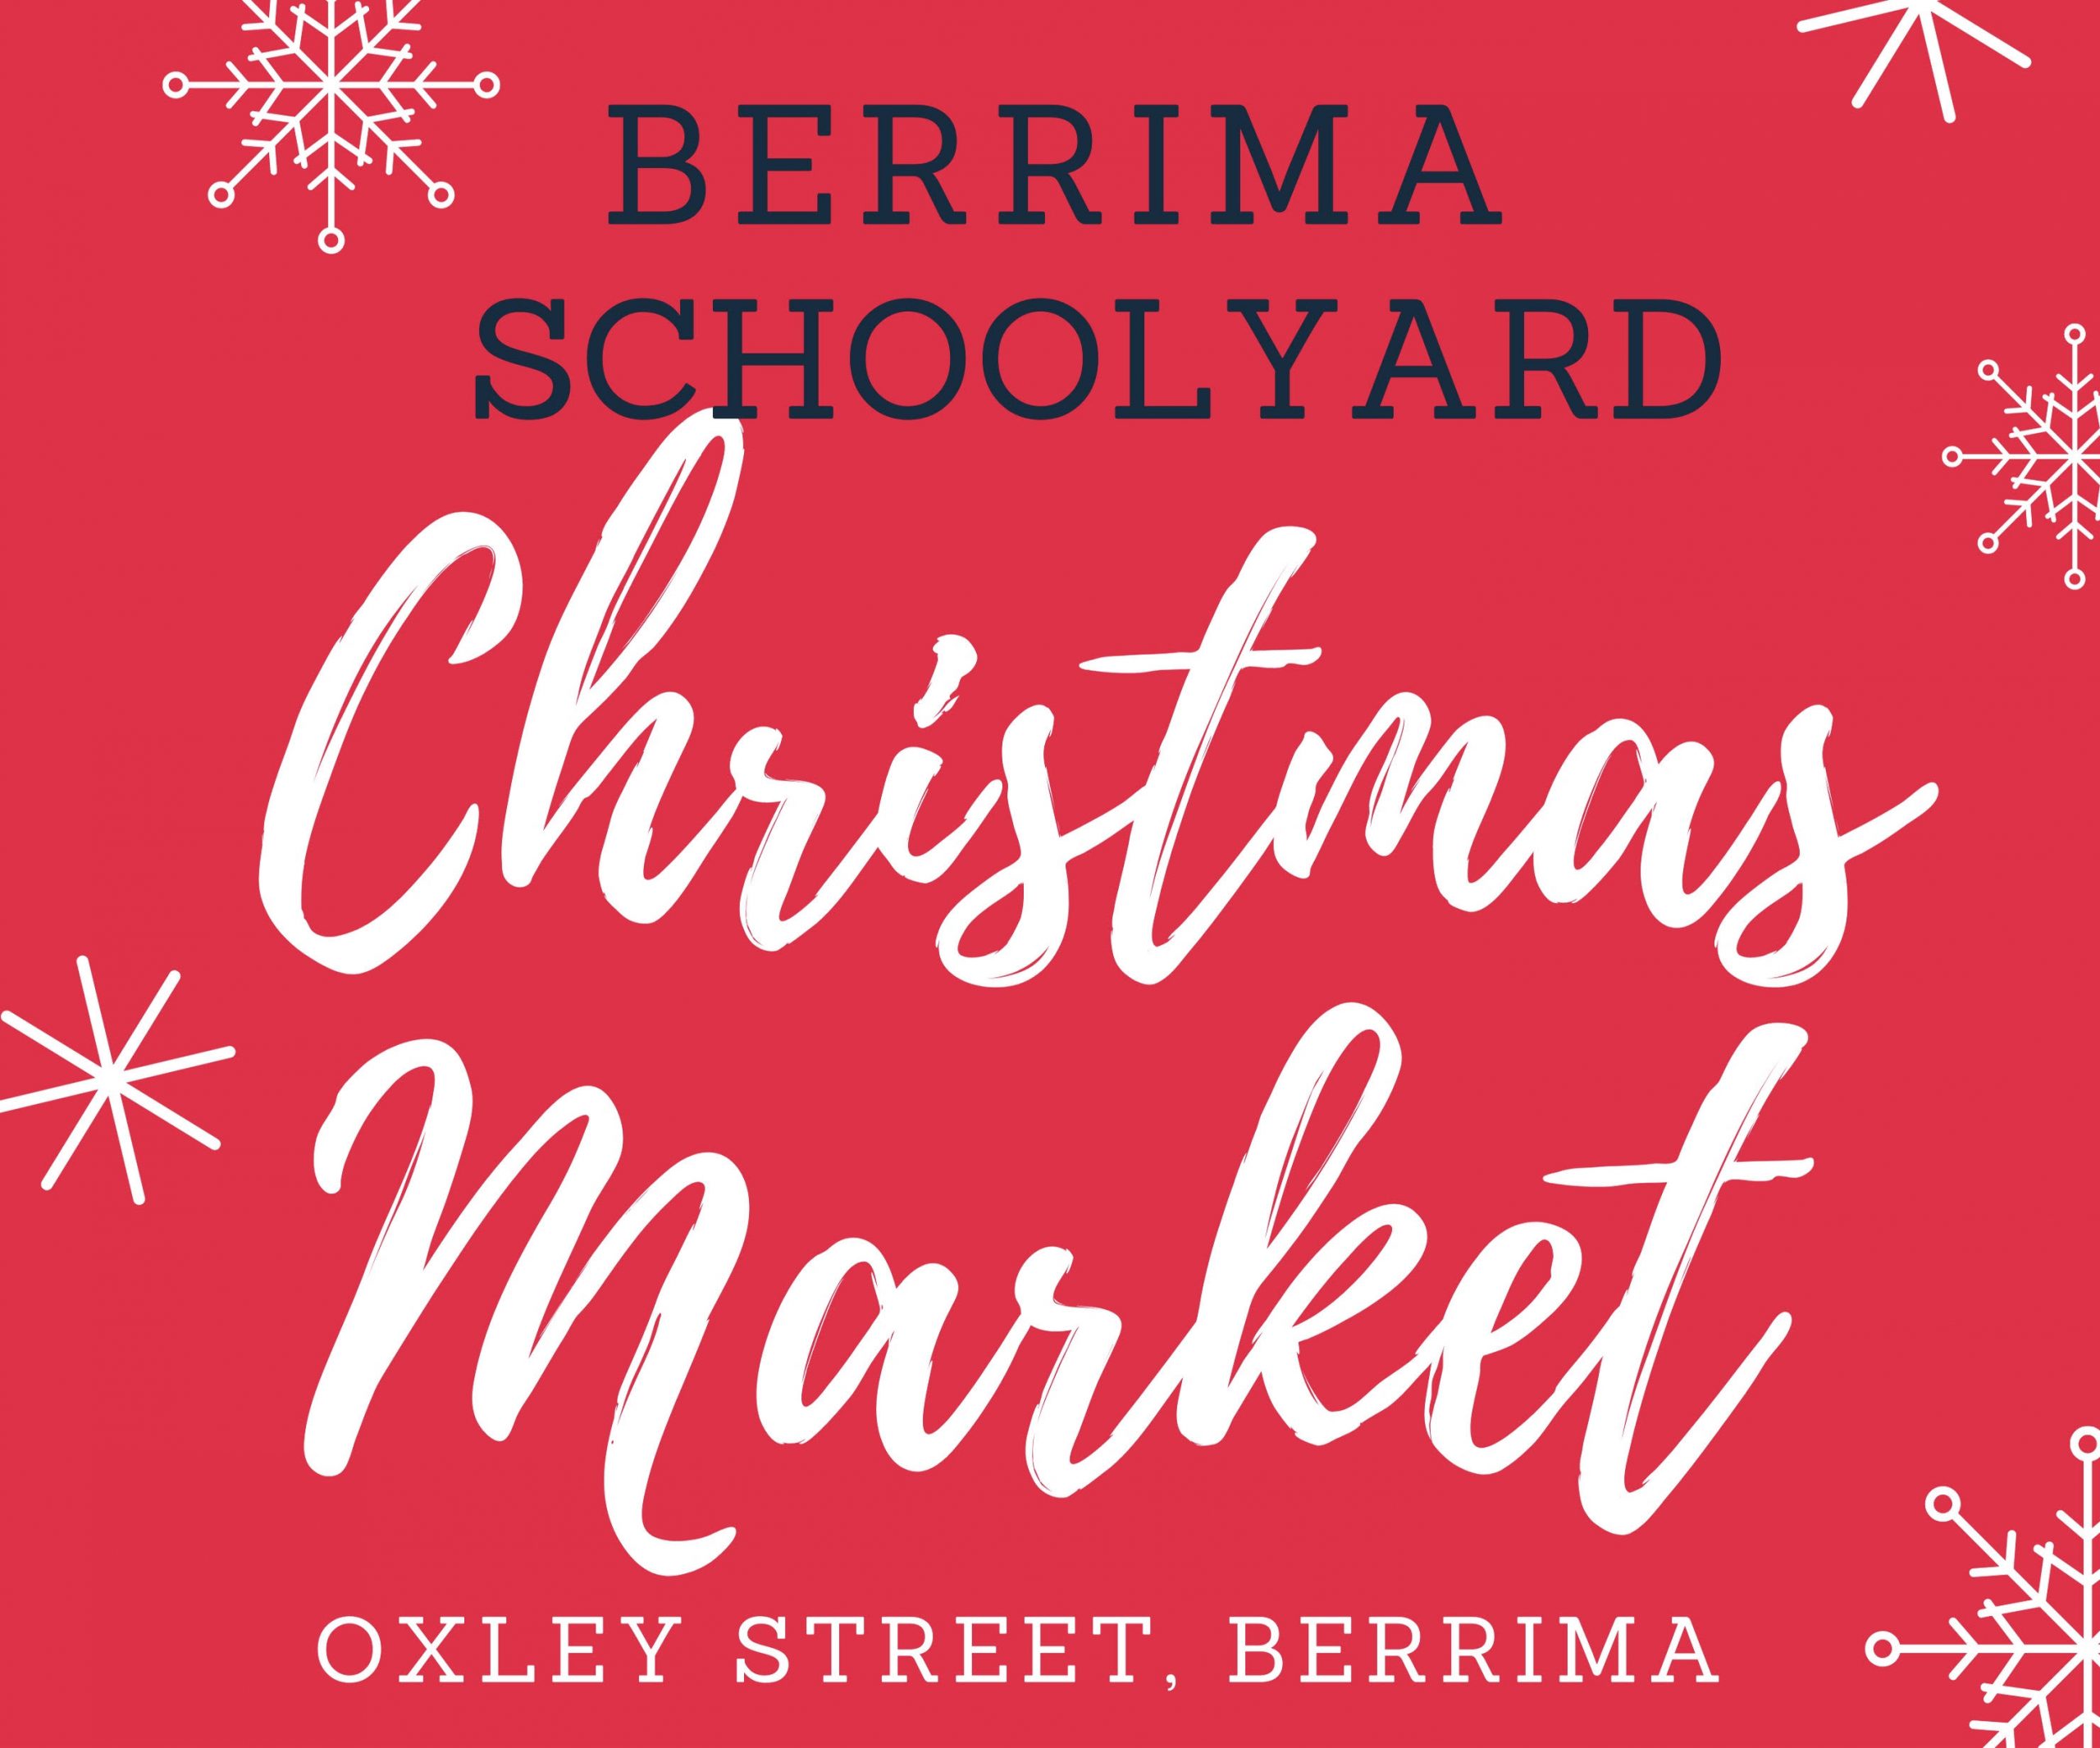 Berrima Schoolyard Christmas Markets